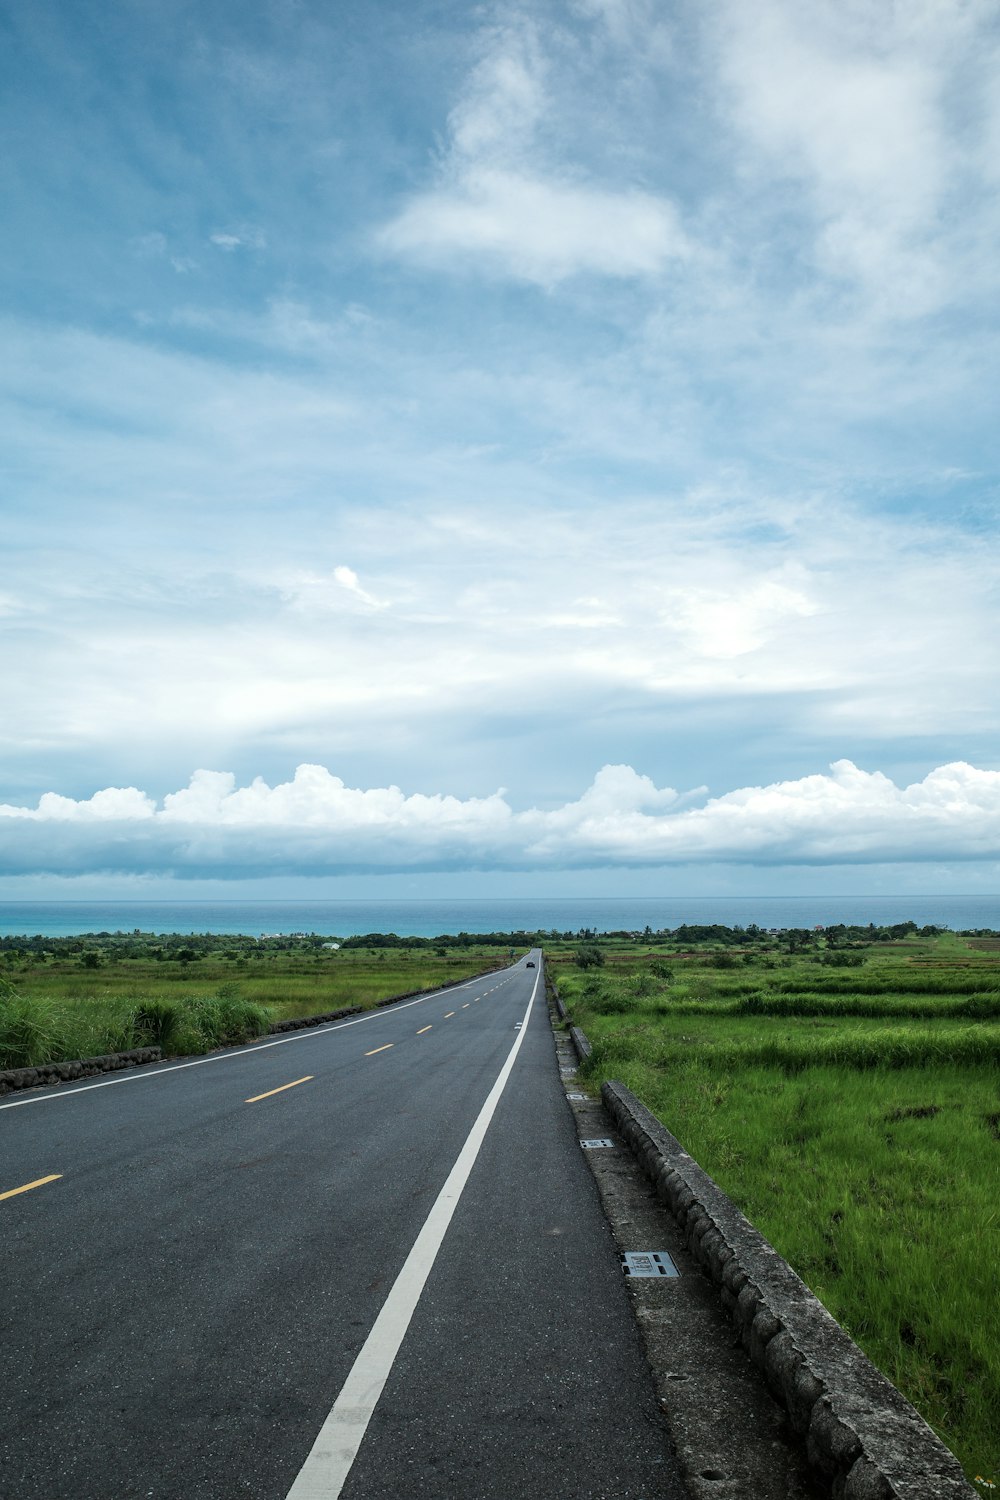 an empty road in a green field under a blue sky